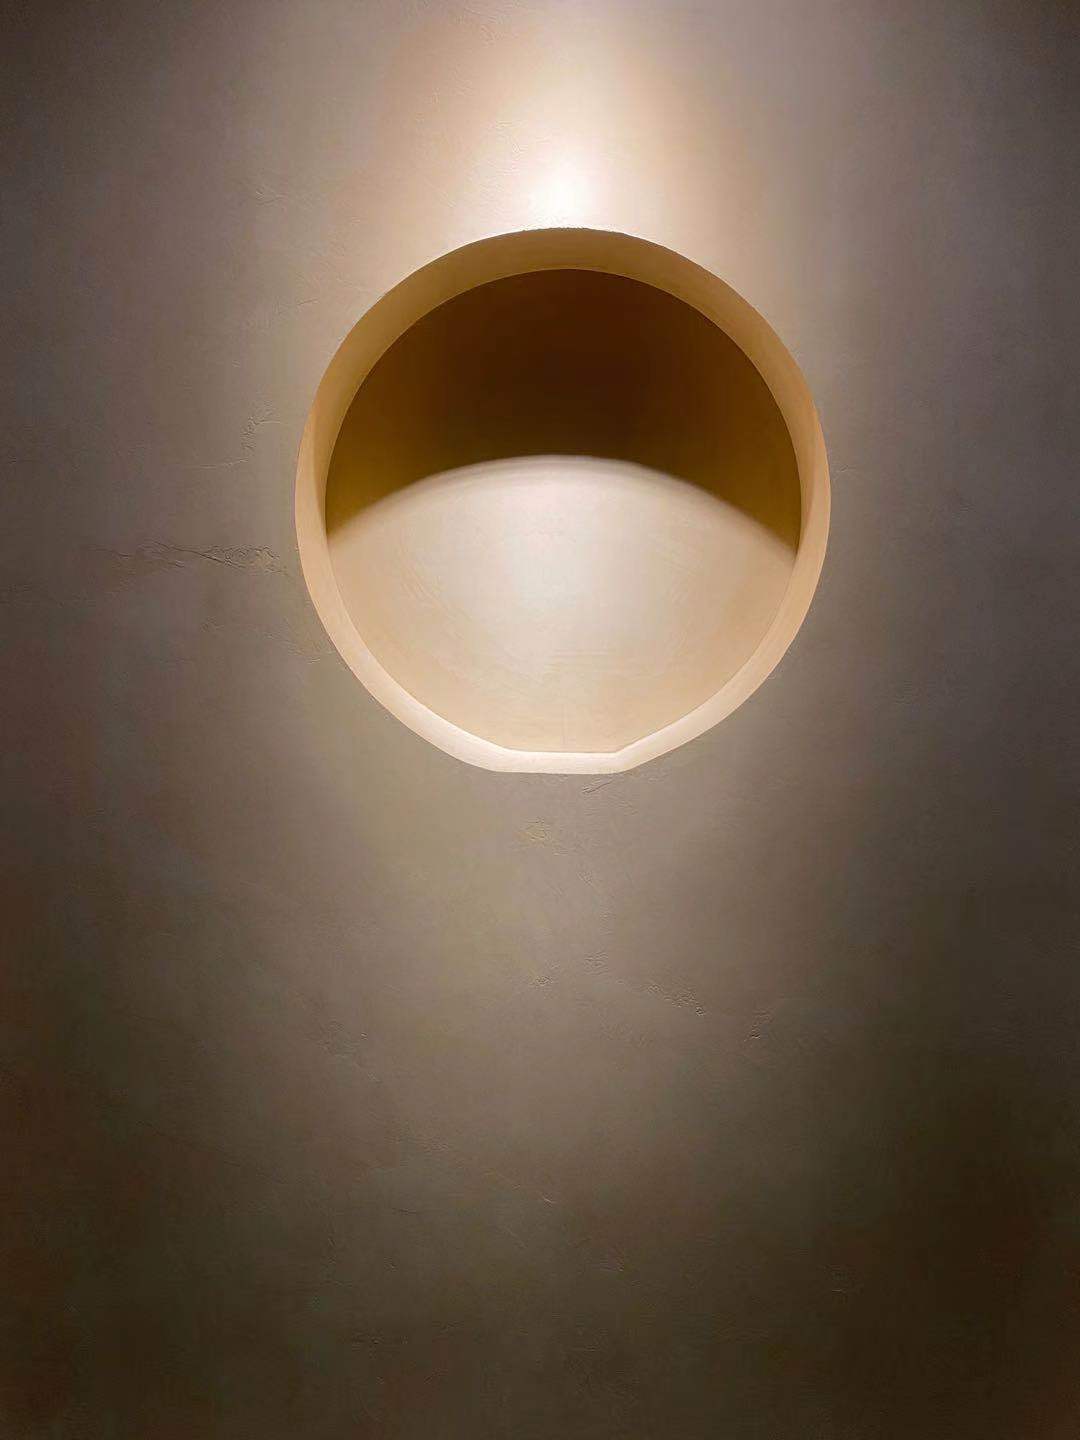 Mikrozement an der Wand eines minimalistischen Hauses mit einer Beleuchtung, die die Verkleidung betont